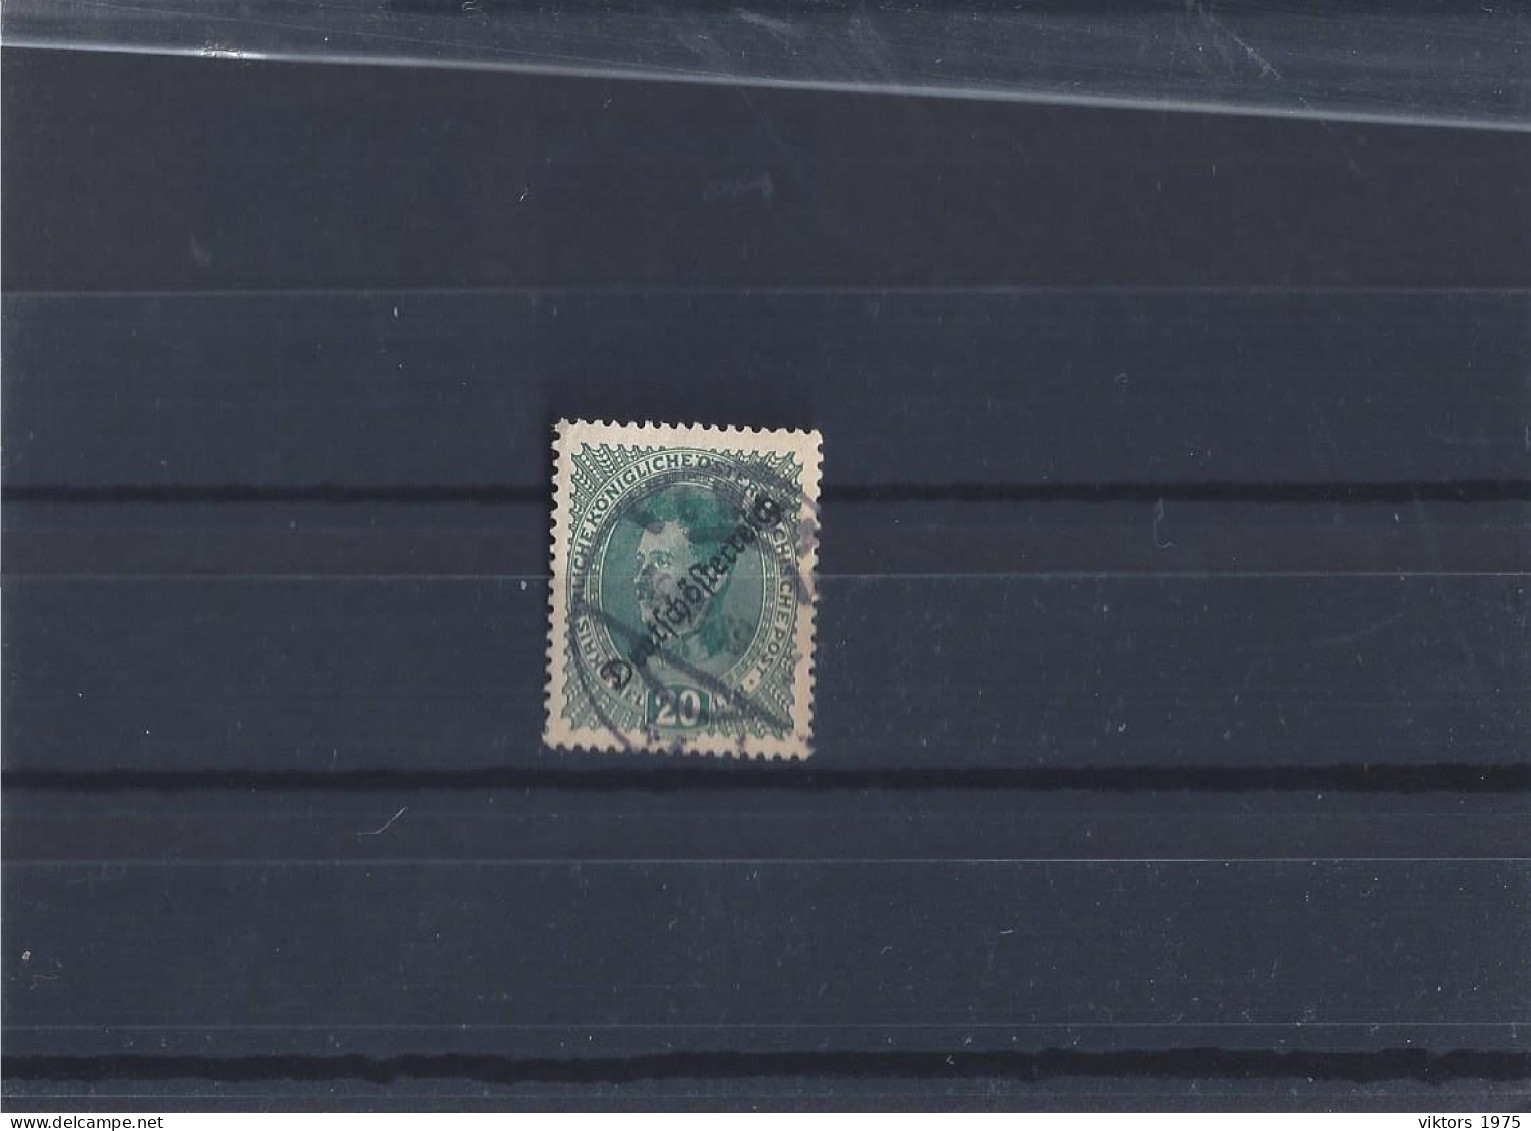 Used Stamp Nr.234 In MICHEL Catalog - Usati